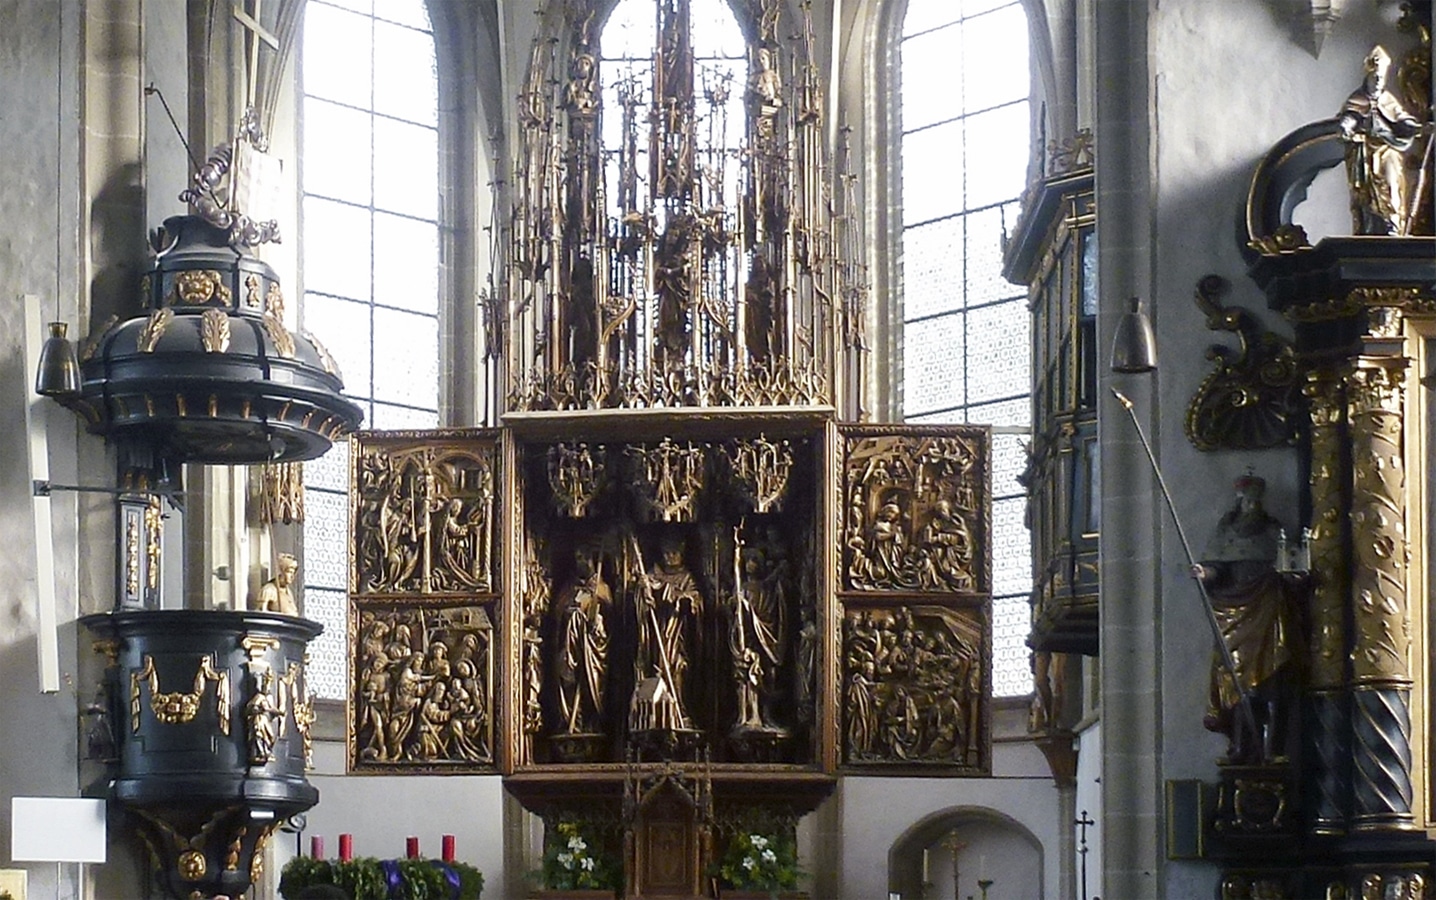 Kefermarktský oltář - celkový pohled